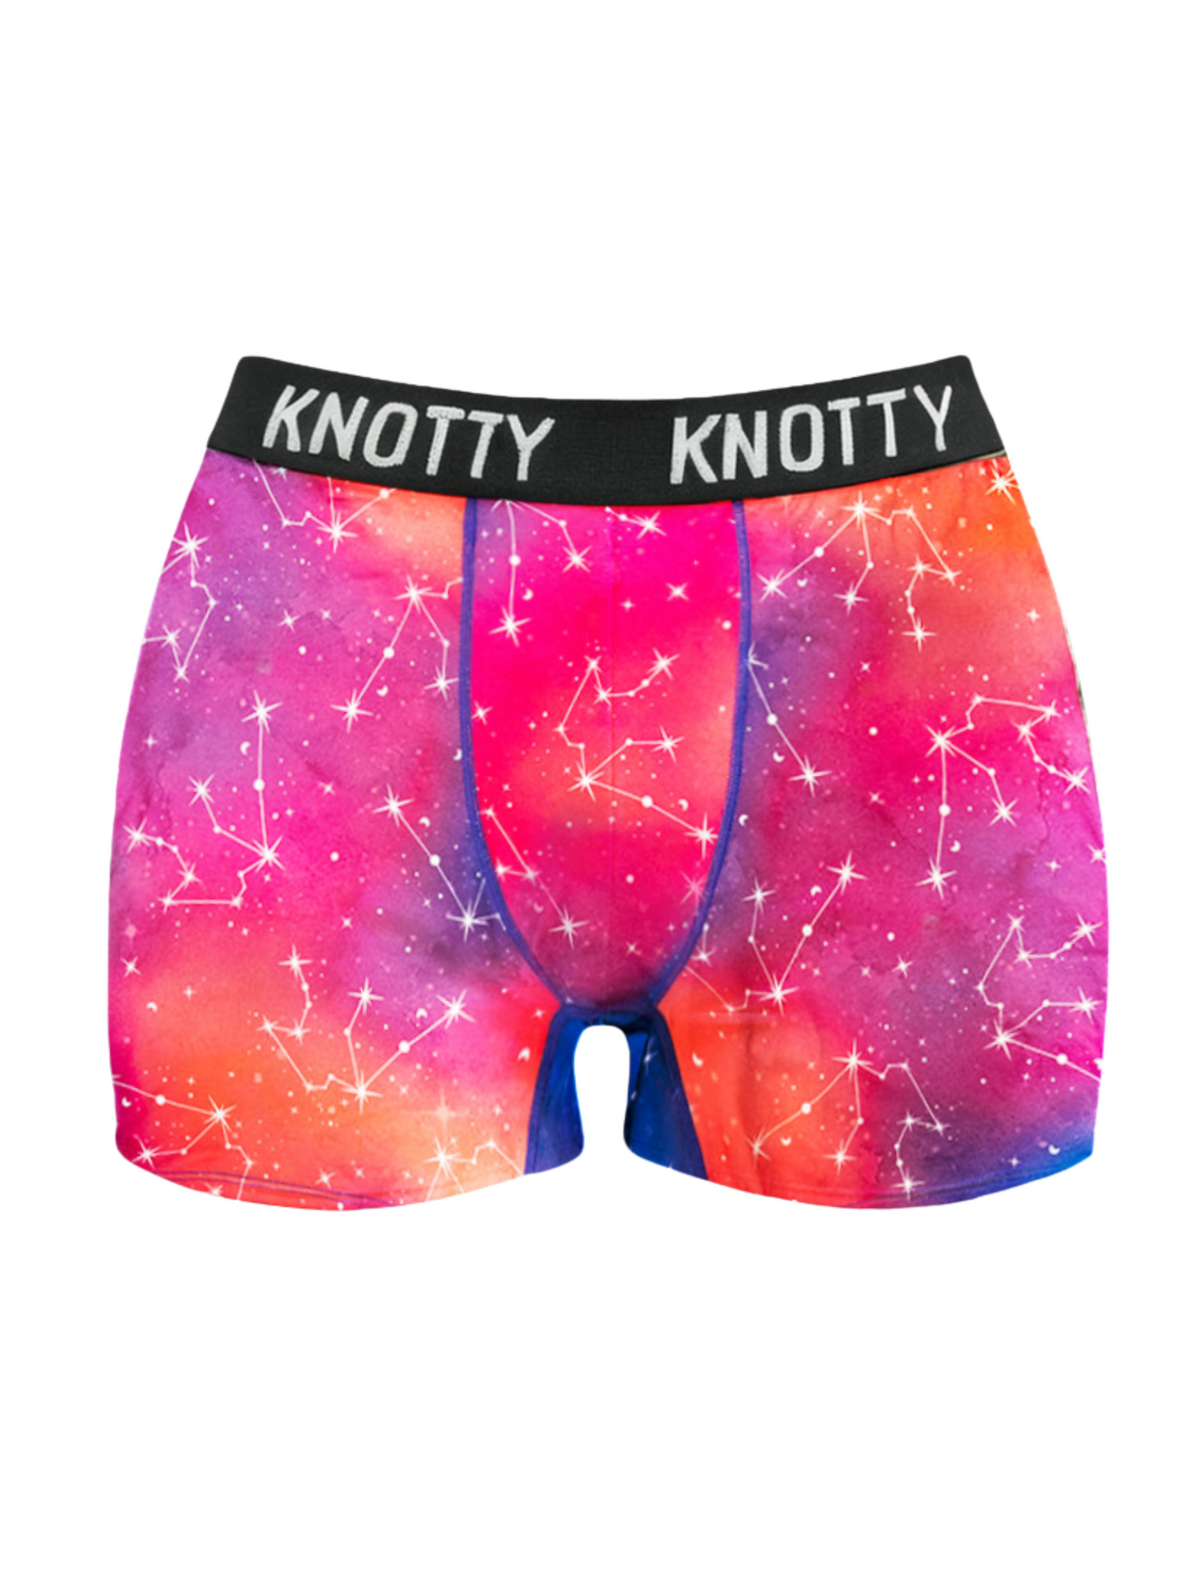 Knobby Underwear